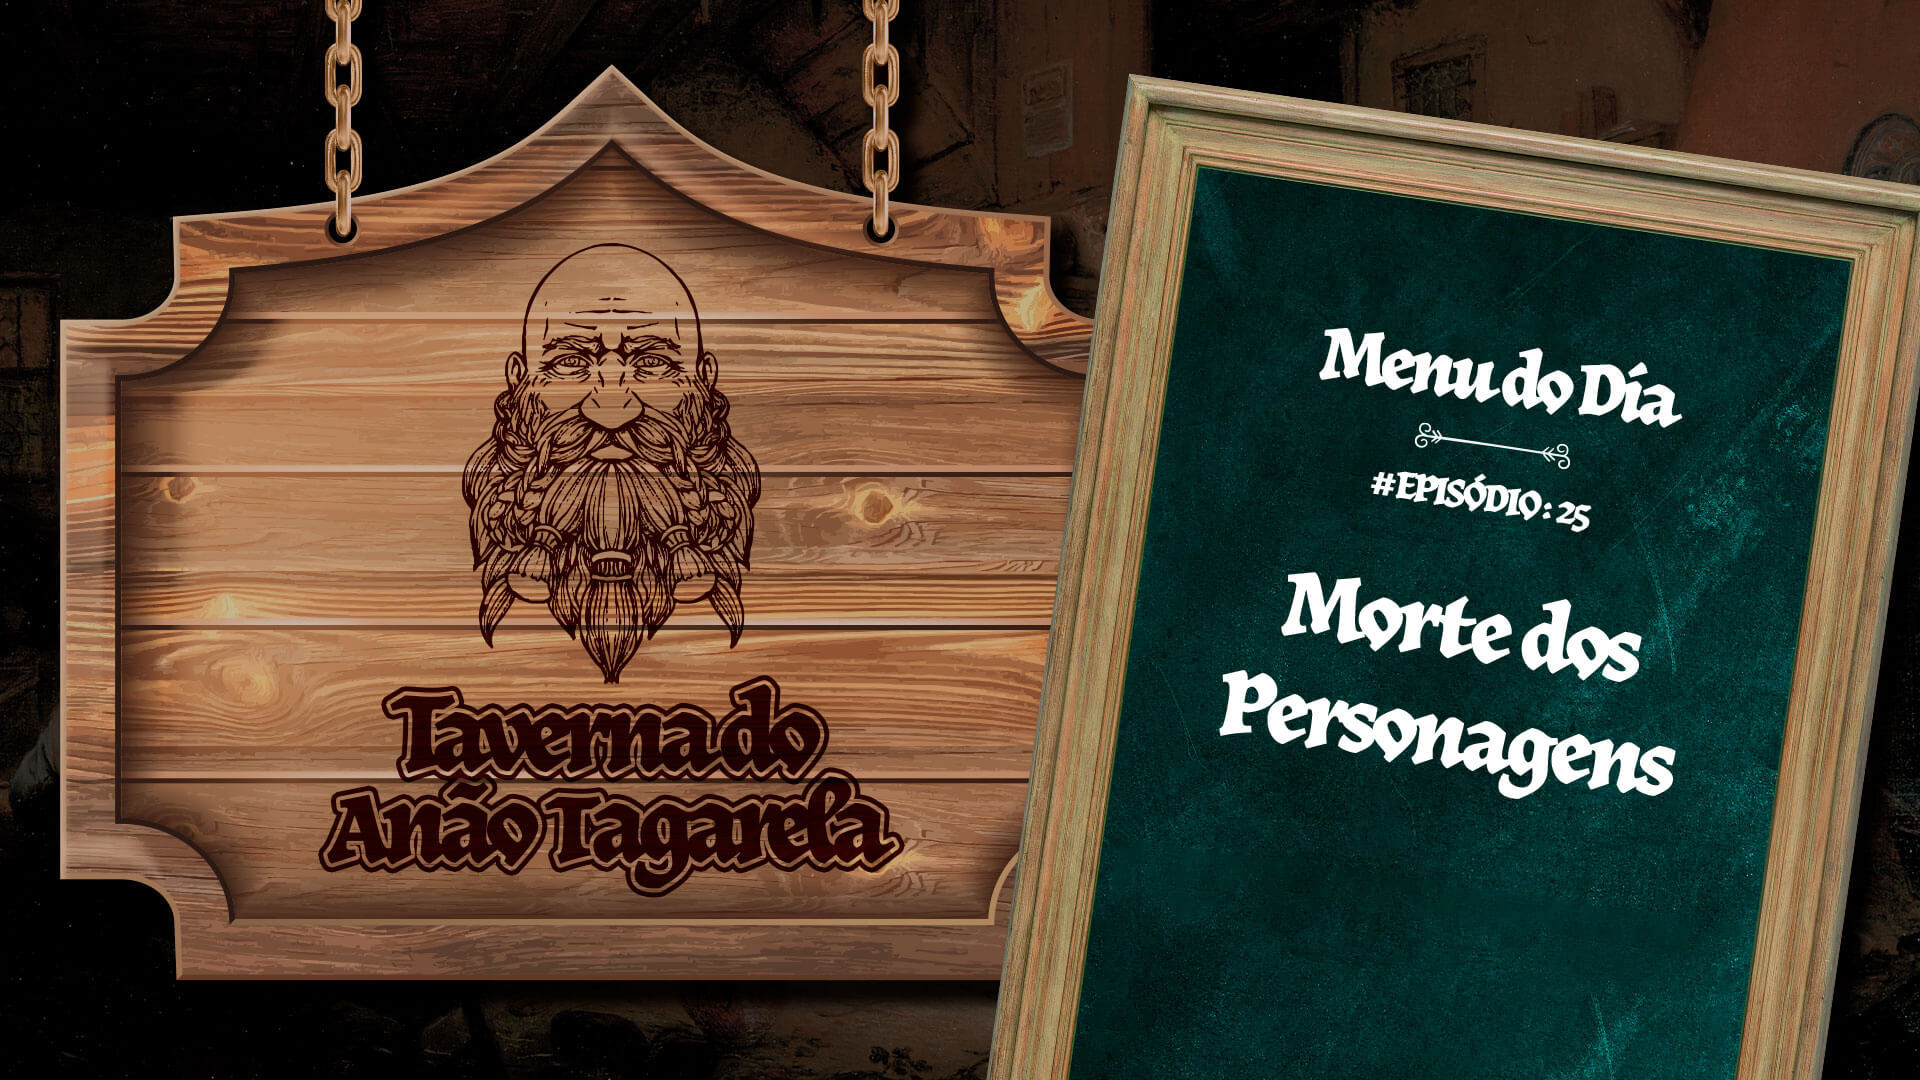 Morte de Personagens – Taverna do Anao Tagarela #25